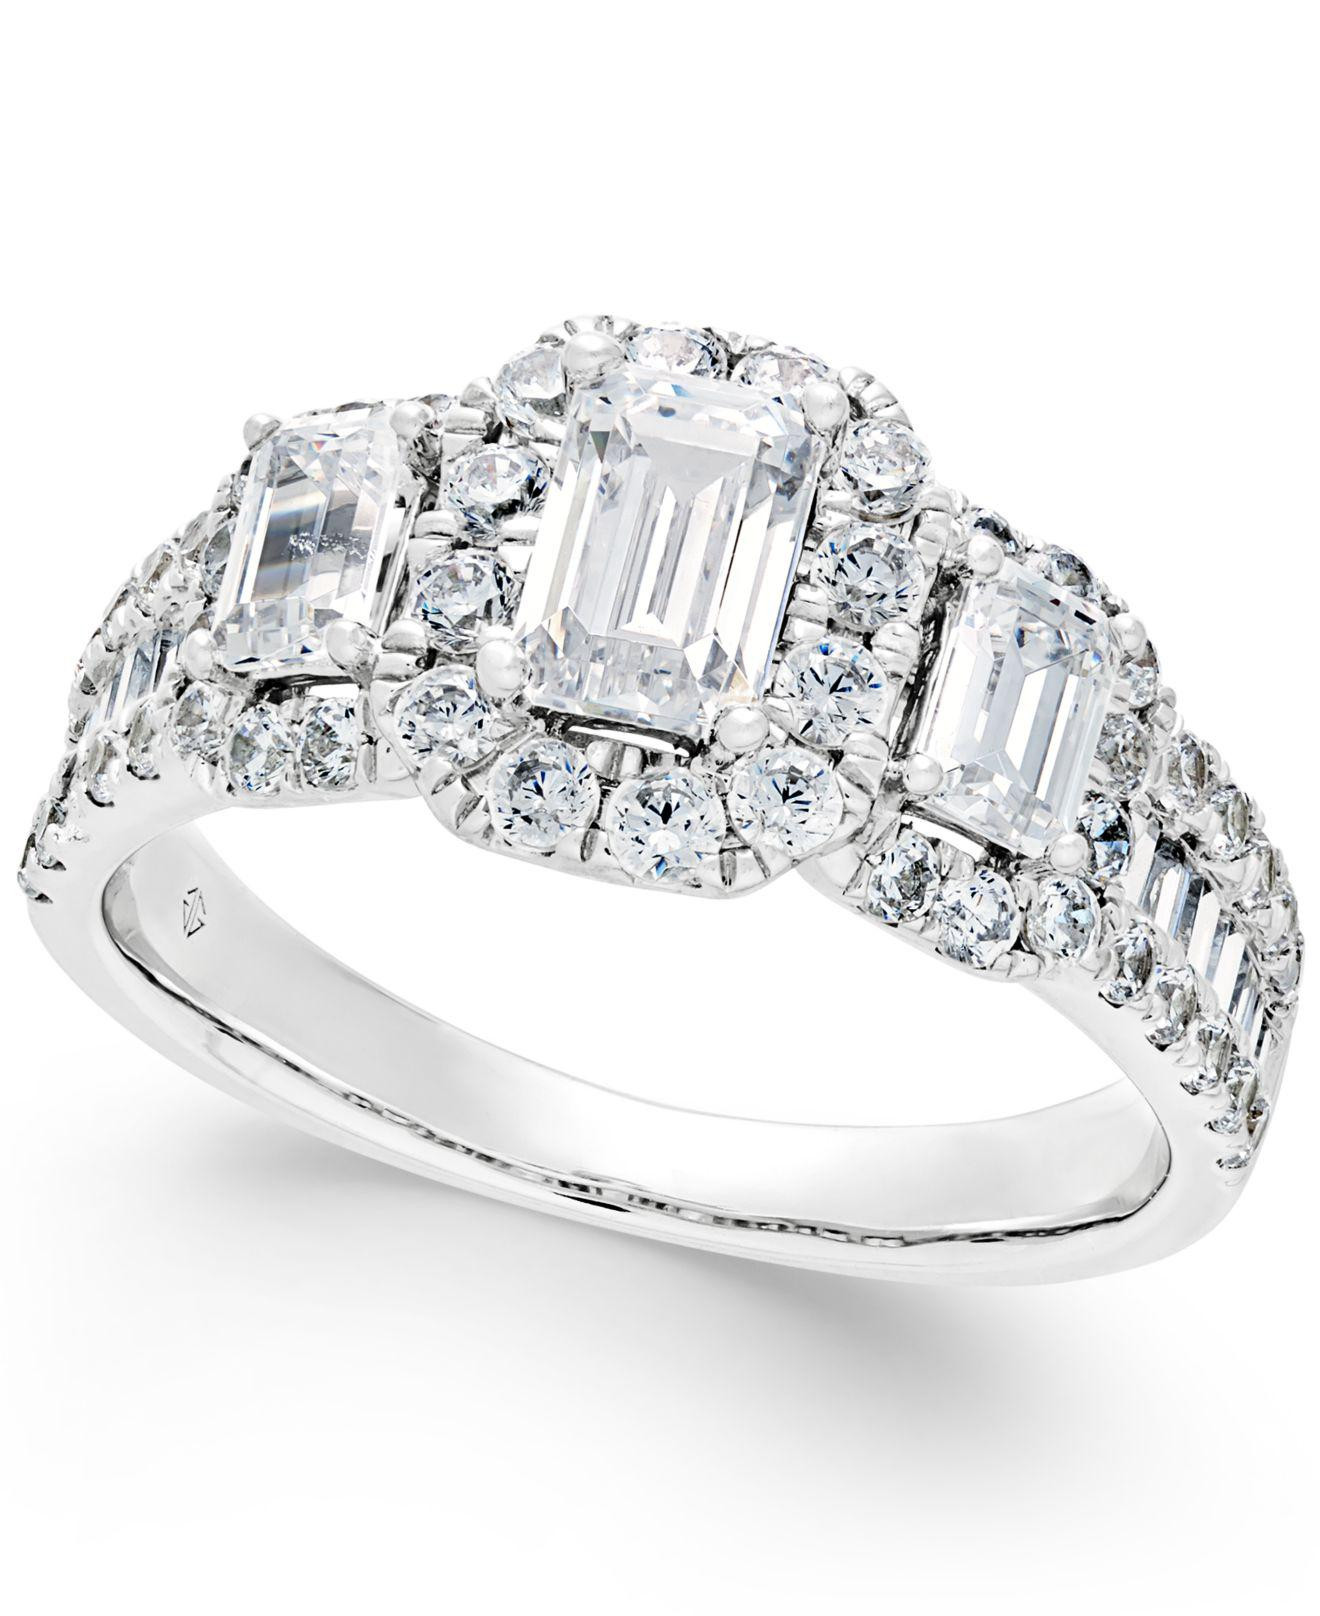 Macys Diamond Rings
 Macy s Diamond Engagement Ring 2 Ct T w In 14k White